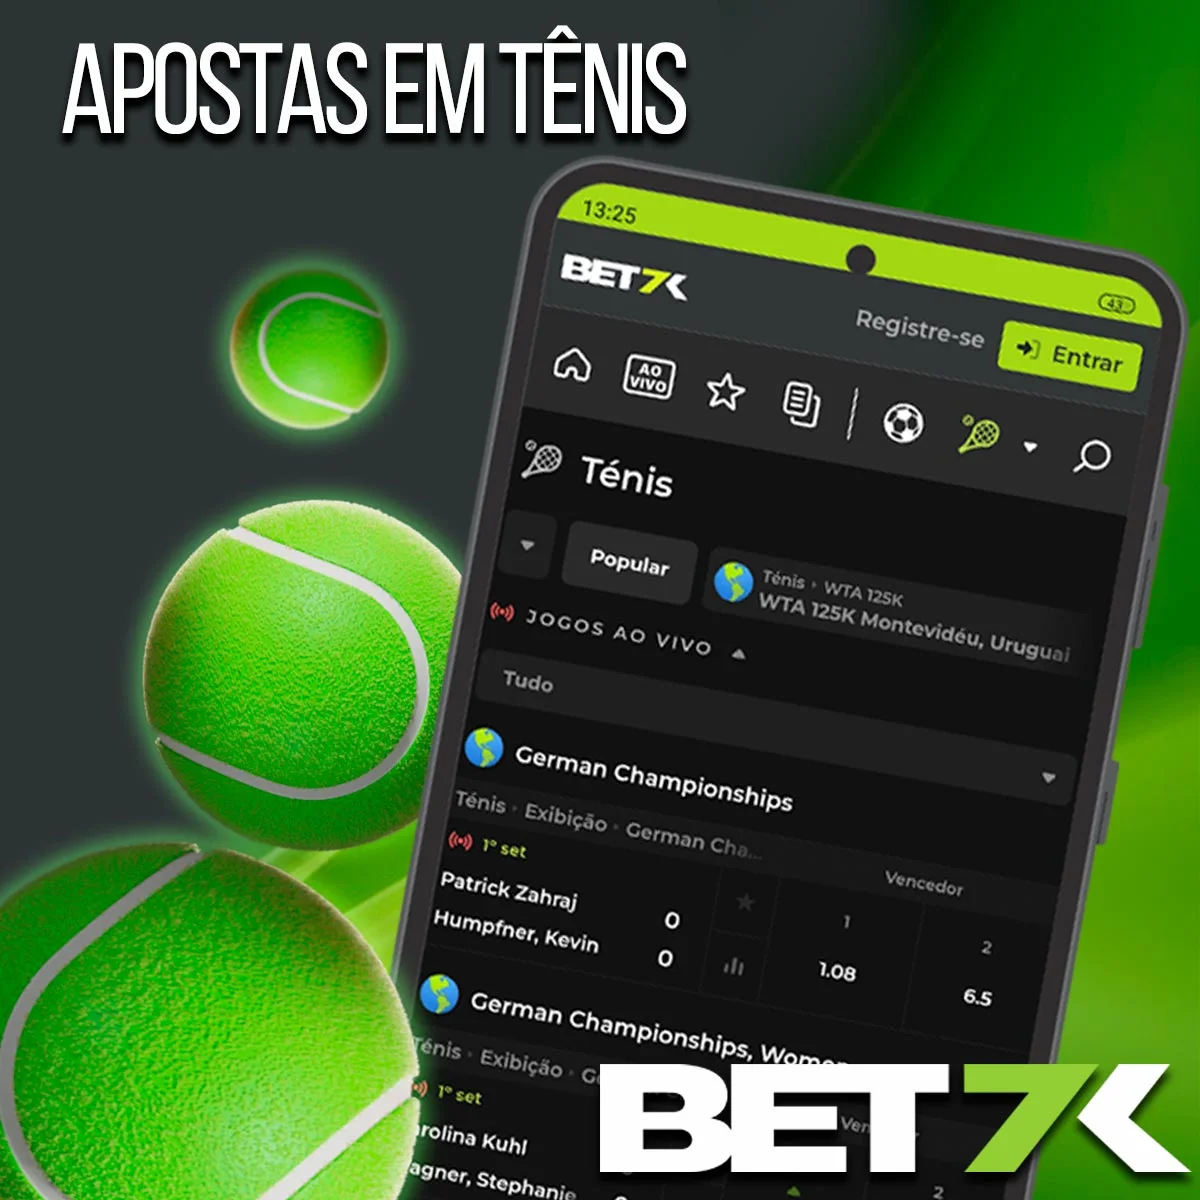 Apostas em tenis na casa de apostas Bet7k no Brasil